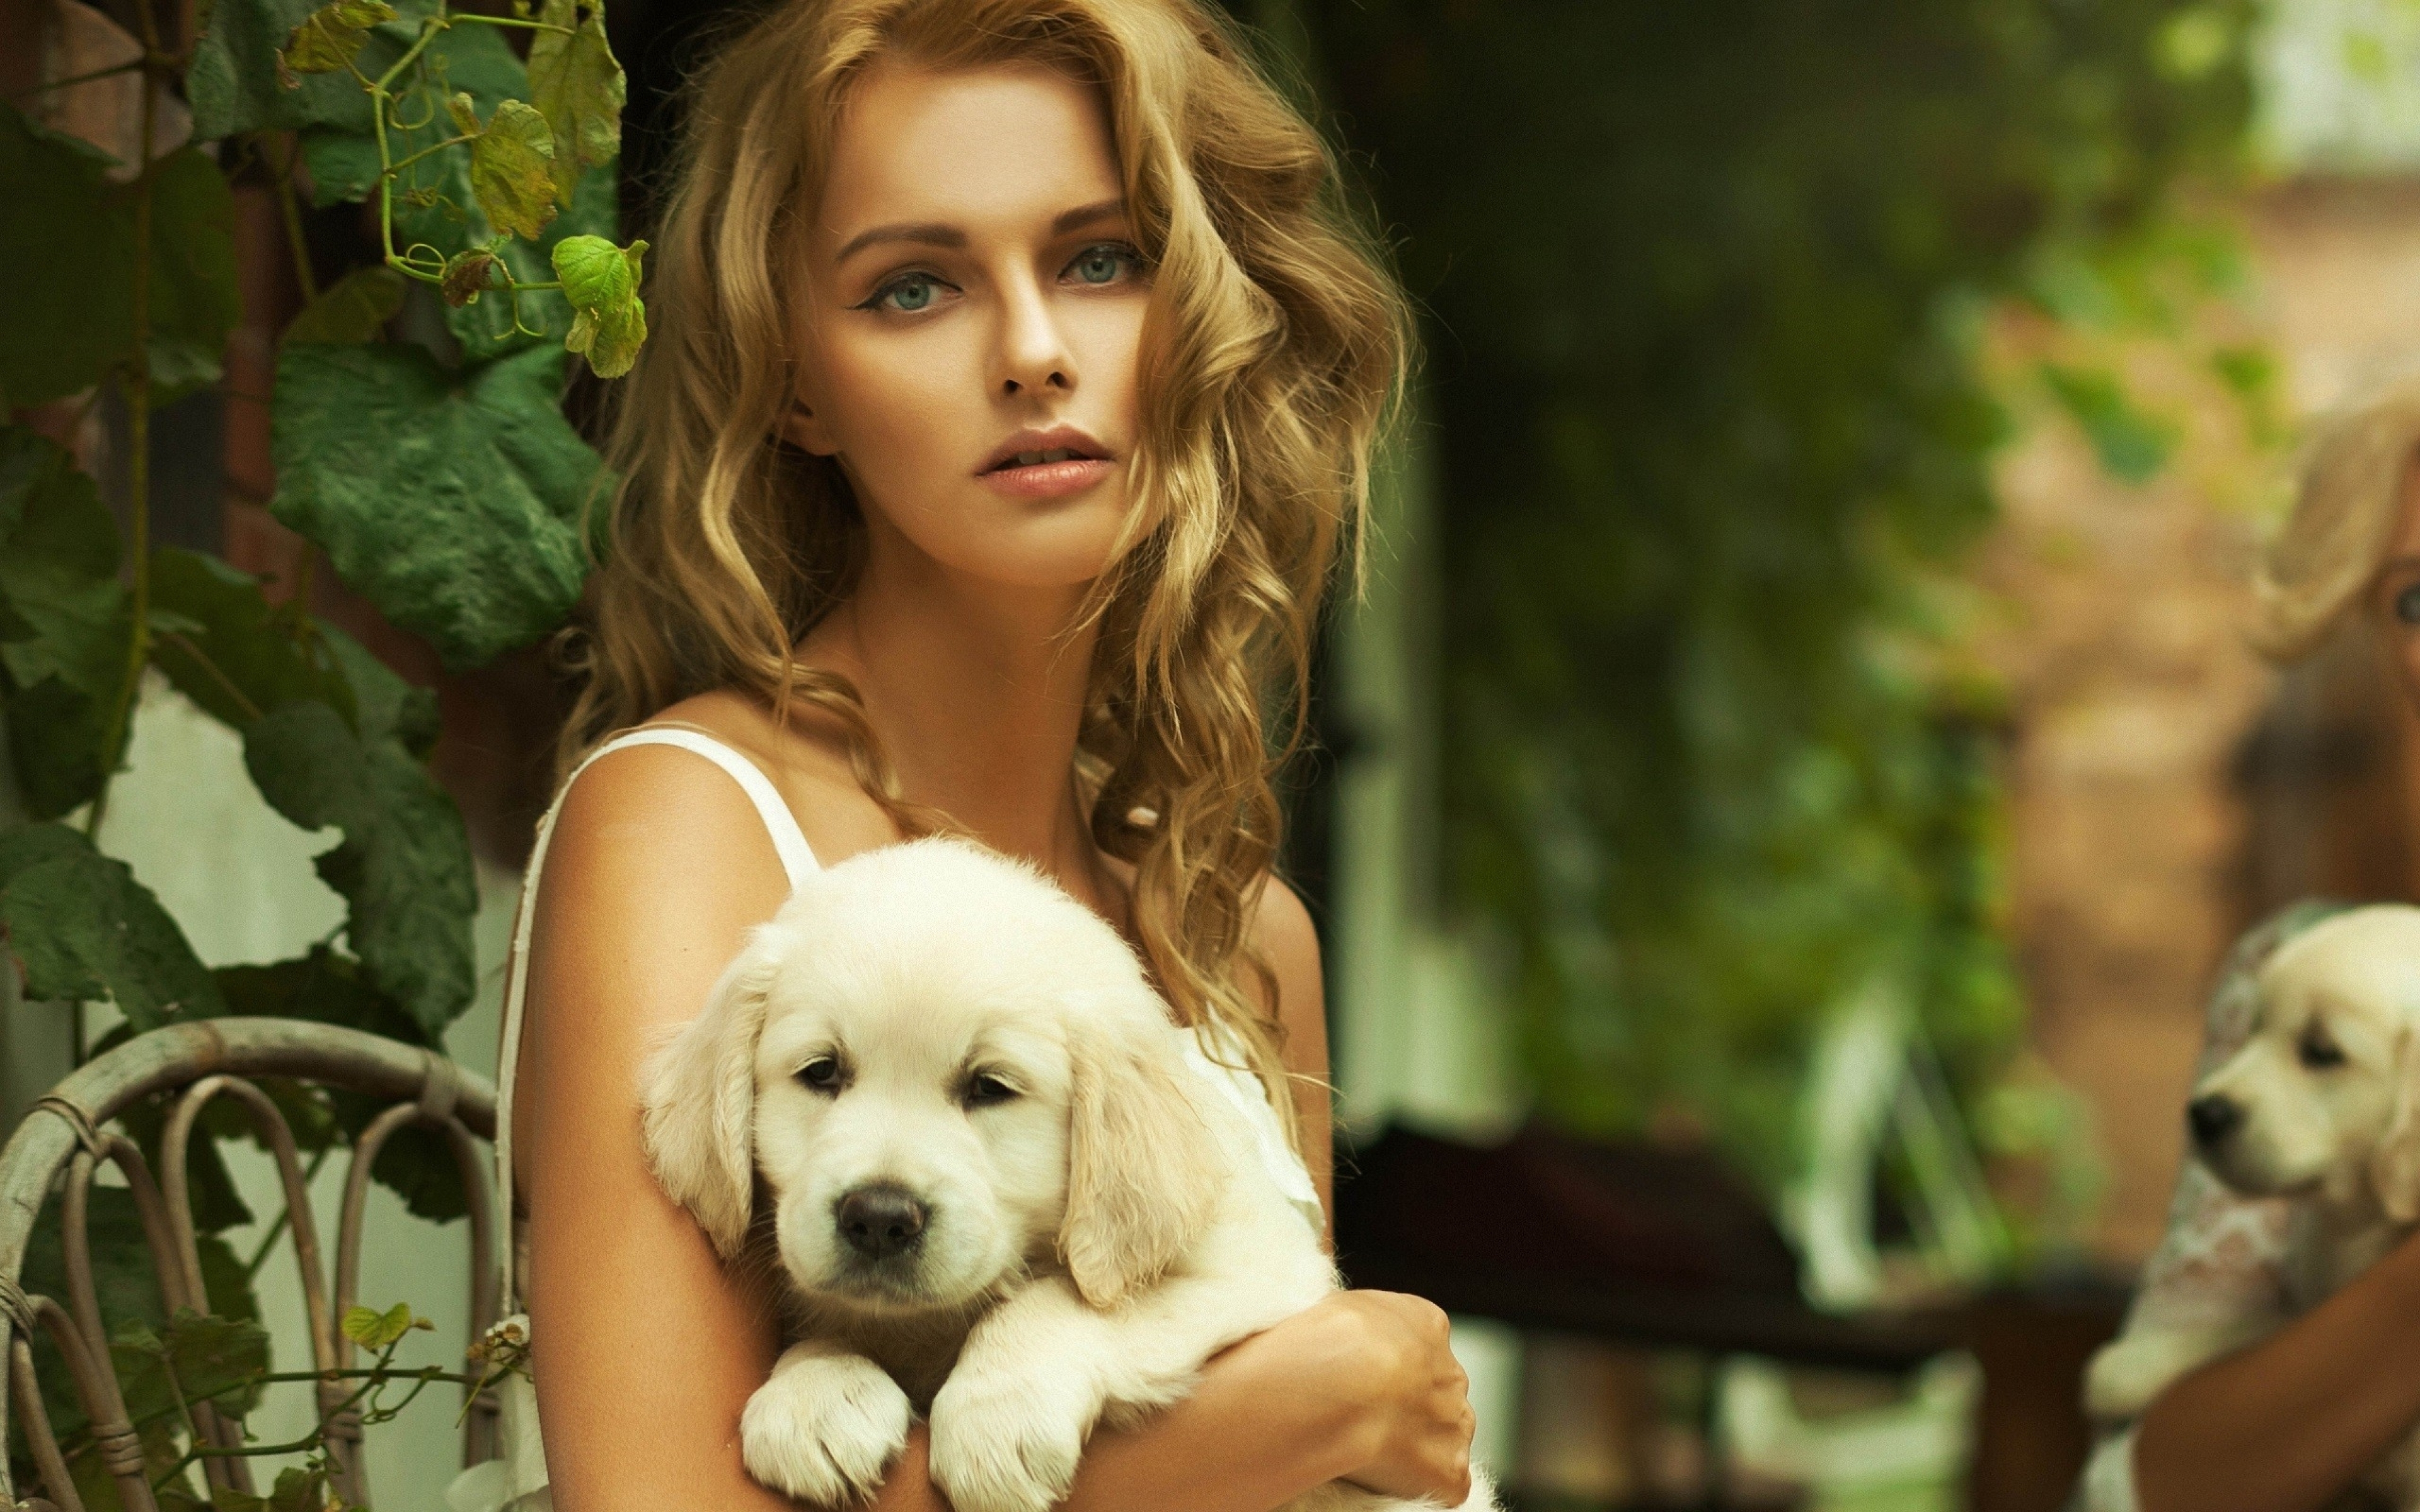 Собака женщиной живой. Девушка с собачкой. Красивая девушка с собачкой. Блондинка с собачкой. Фотосессия с собакой.